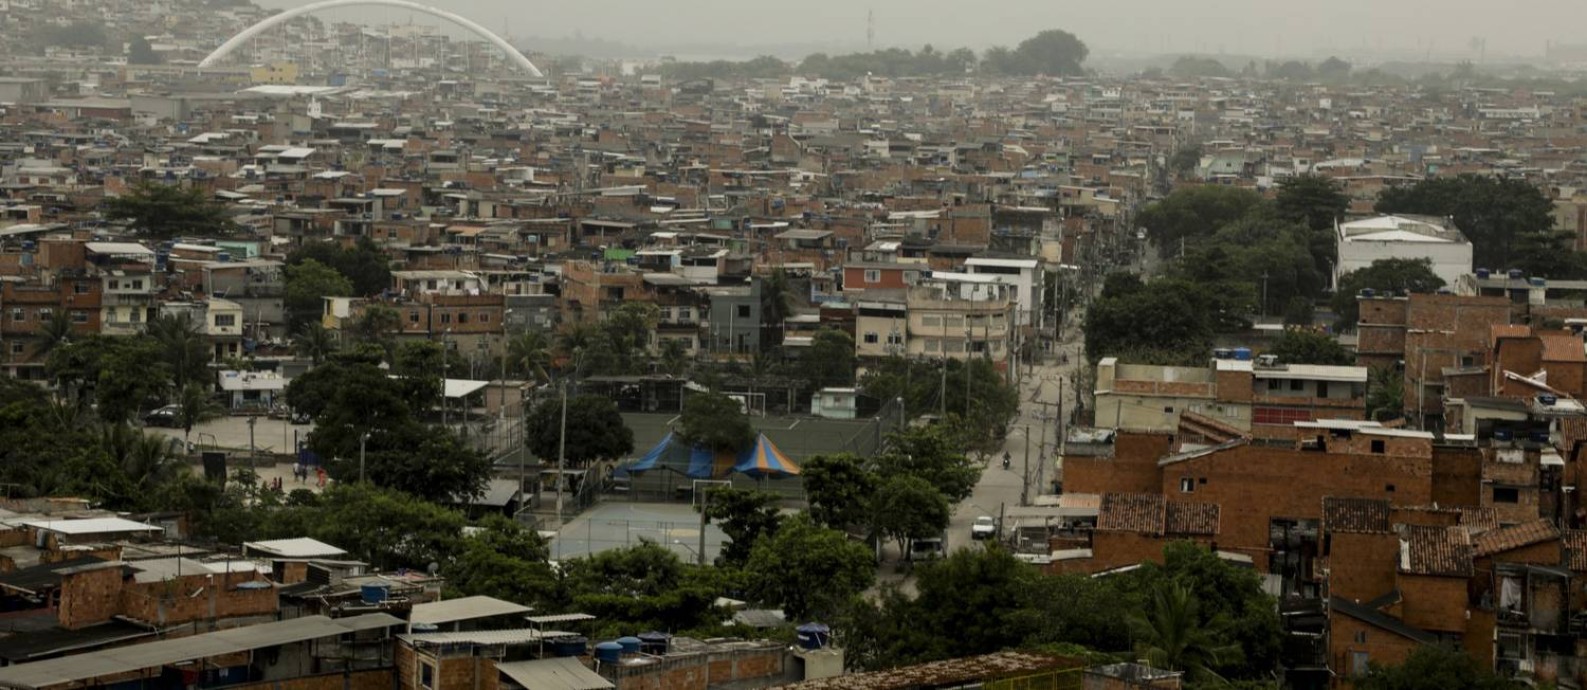 Complexo da Maré visto do alto: região tem 16 comunidades com 790 ruas, das quais 480 ainda não têm nome Foto: Gabriel de Paiva / Agência O Globo